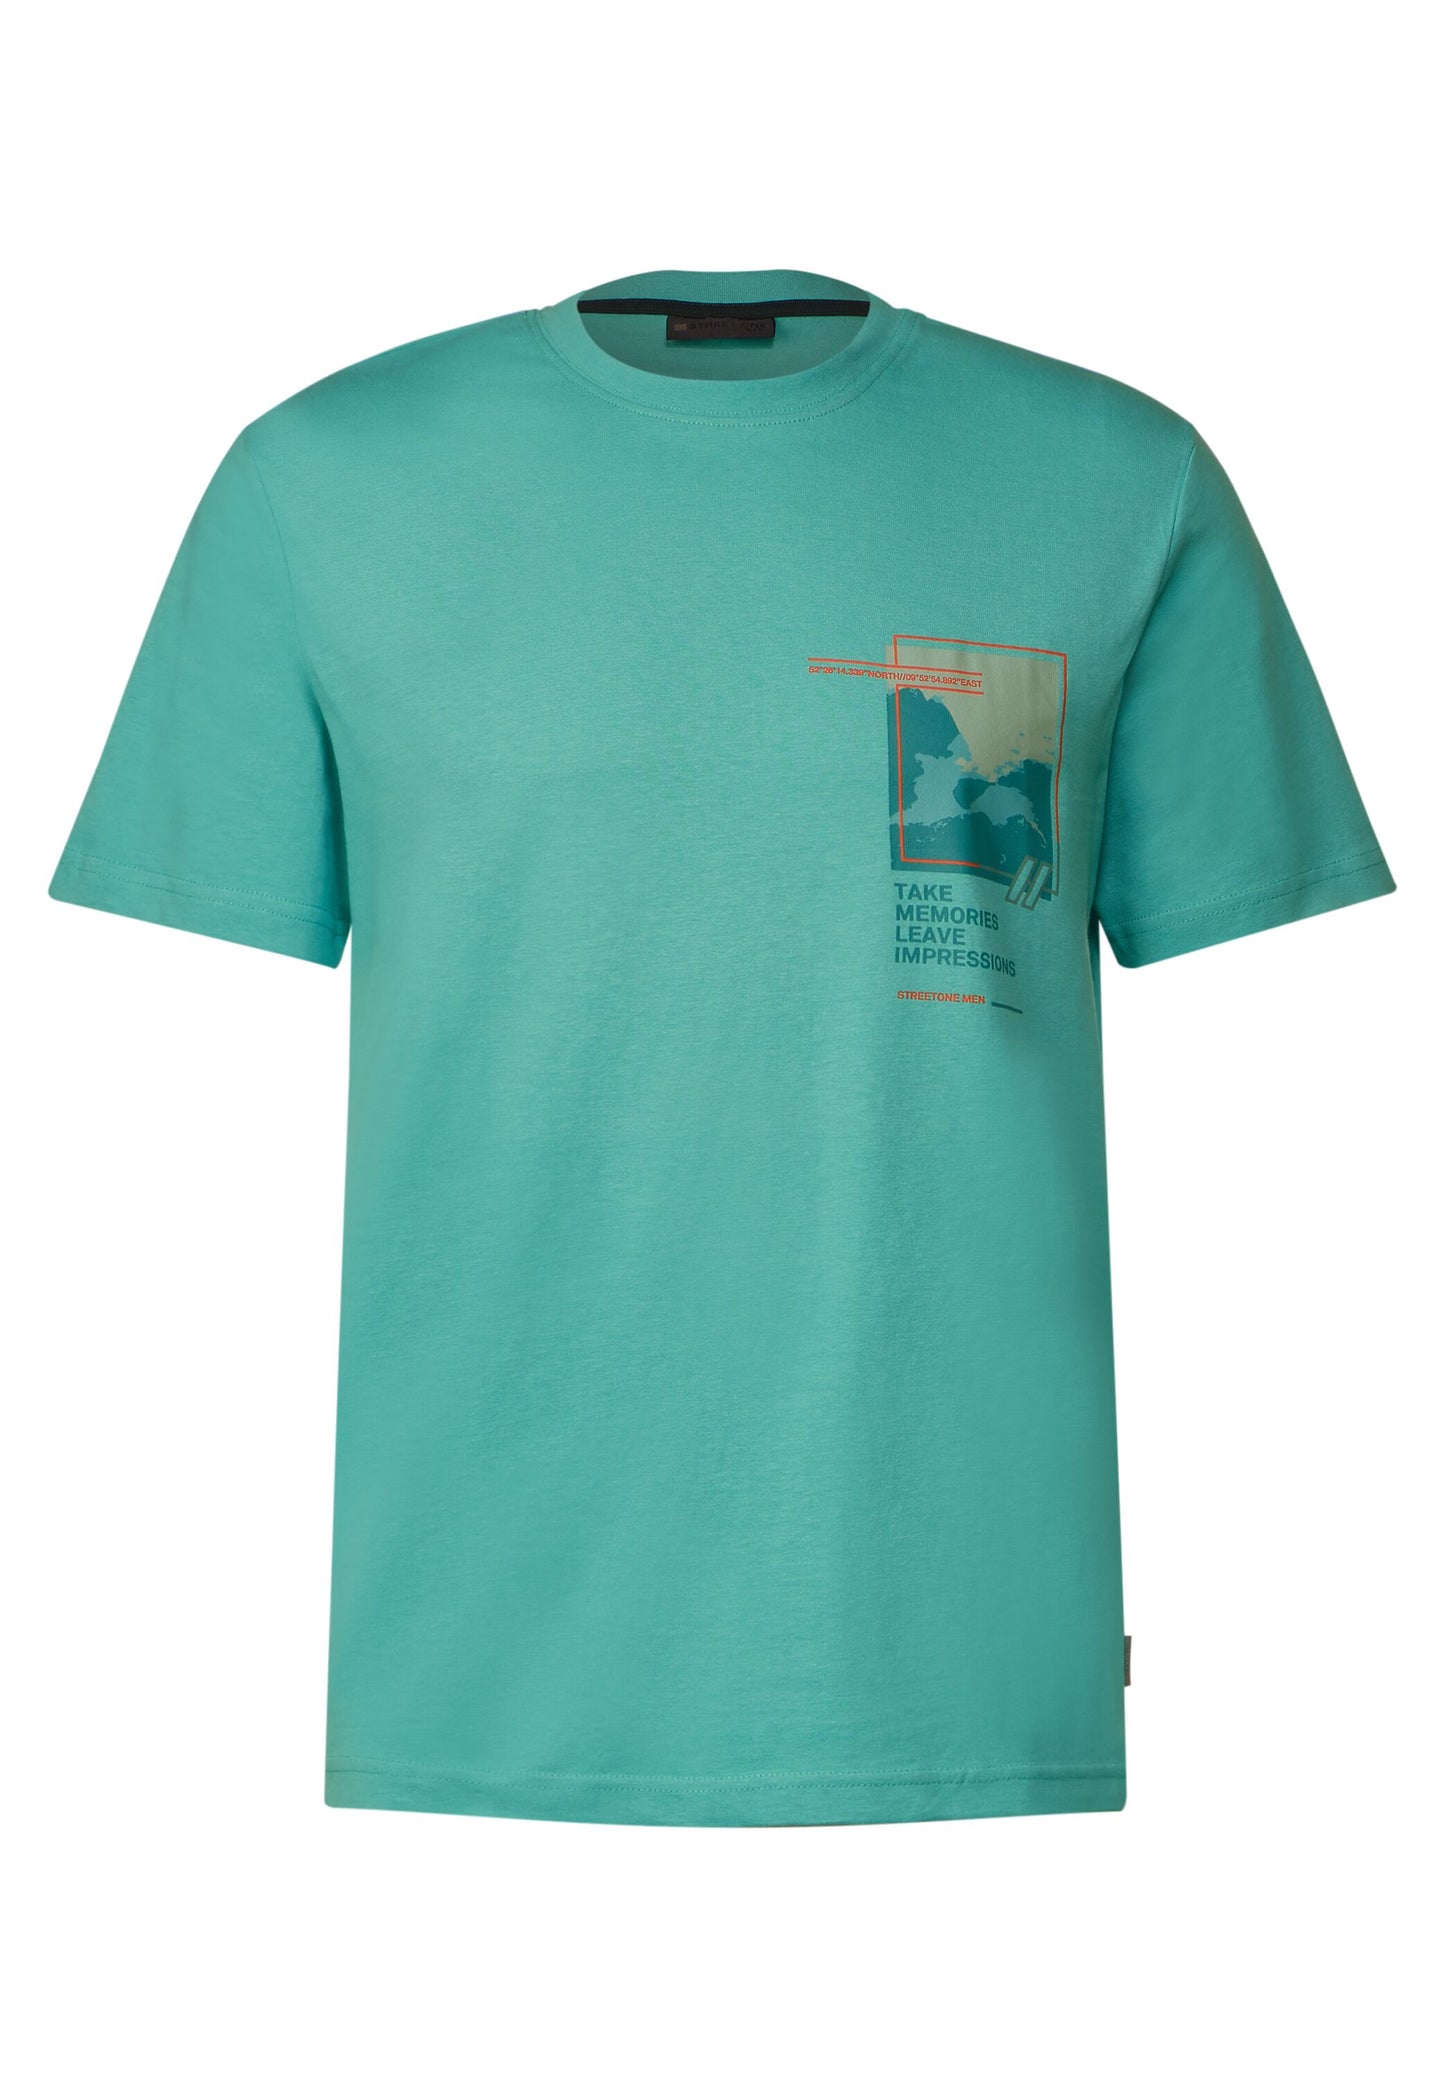 Street One MEN - Herren T-Shirt mit Brustprint - grün